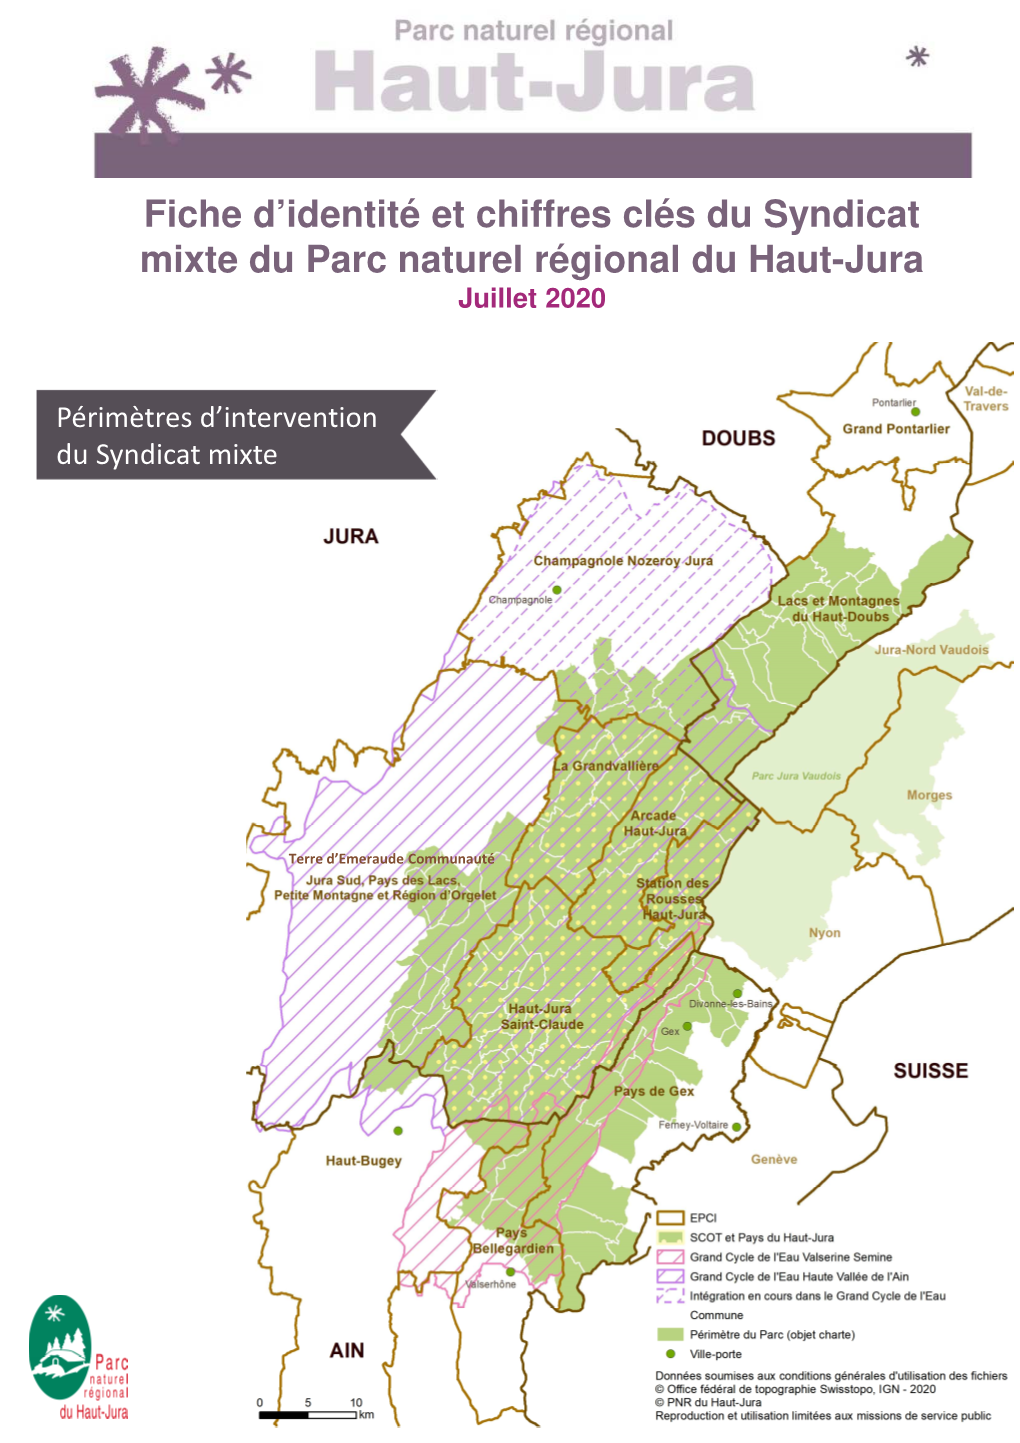 Fiche D'identité Et Chiffres Clés Du Syndicat Mixte Du Parc Naturel Régional Du Haut-Jura